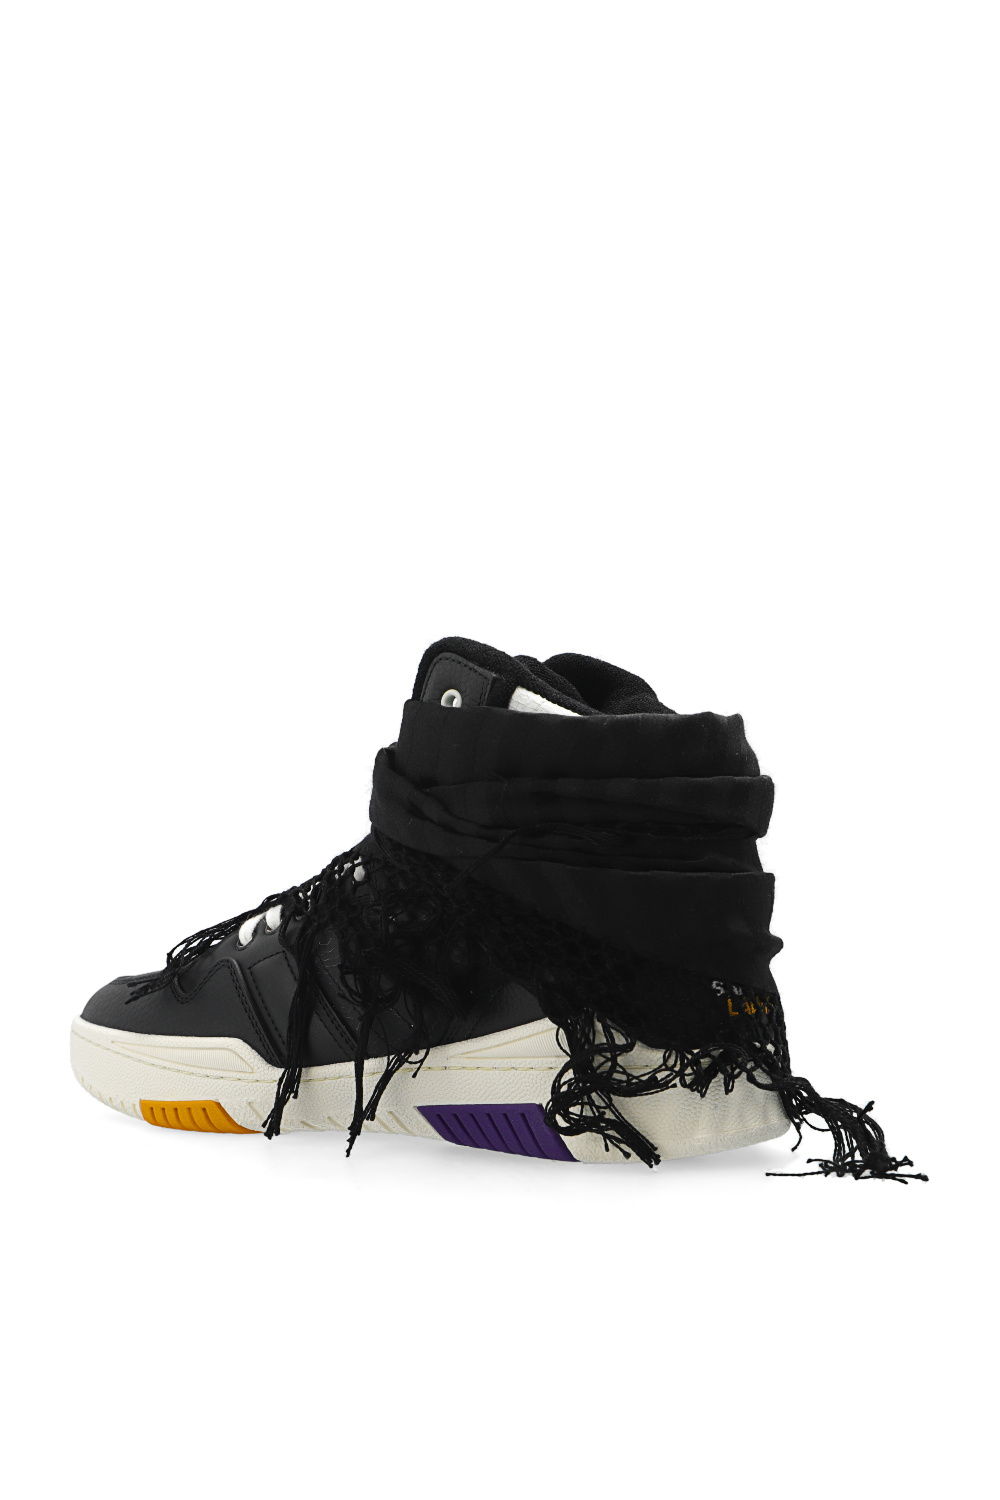 Saint Laurent ‘Smith’ high-top sneakers